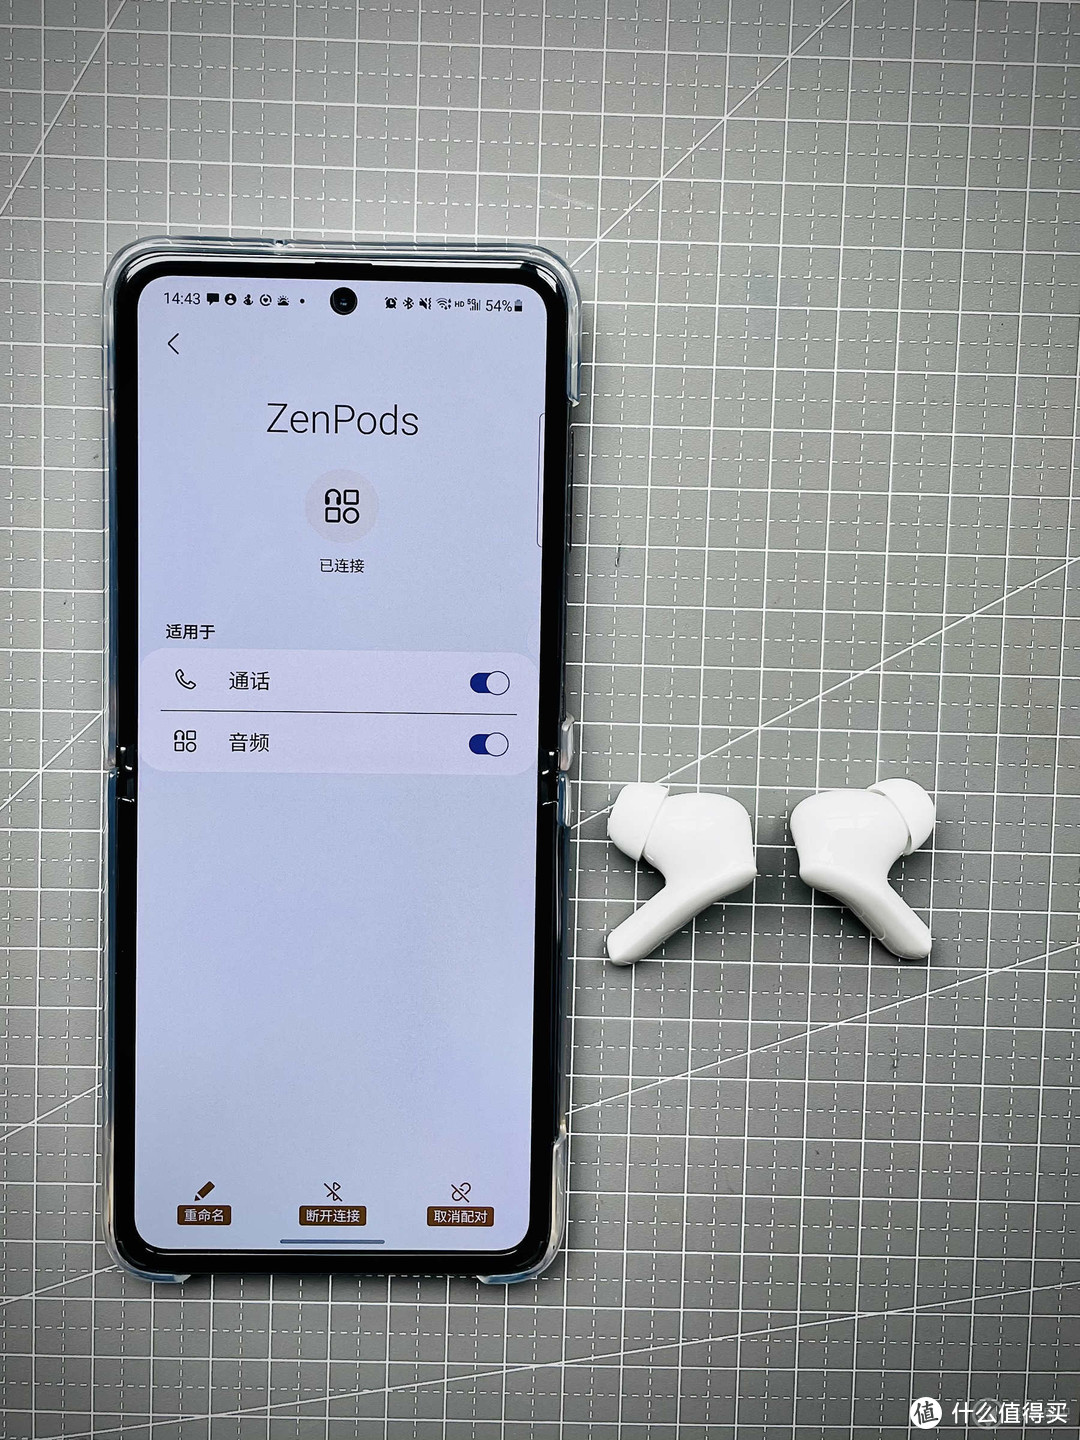 经济适用型ANC降噪TWS耳机ZenPods上手体验